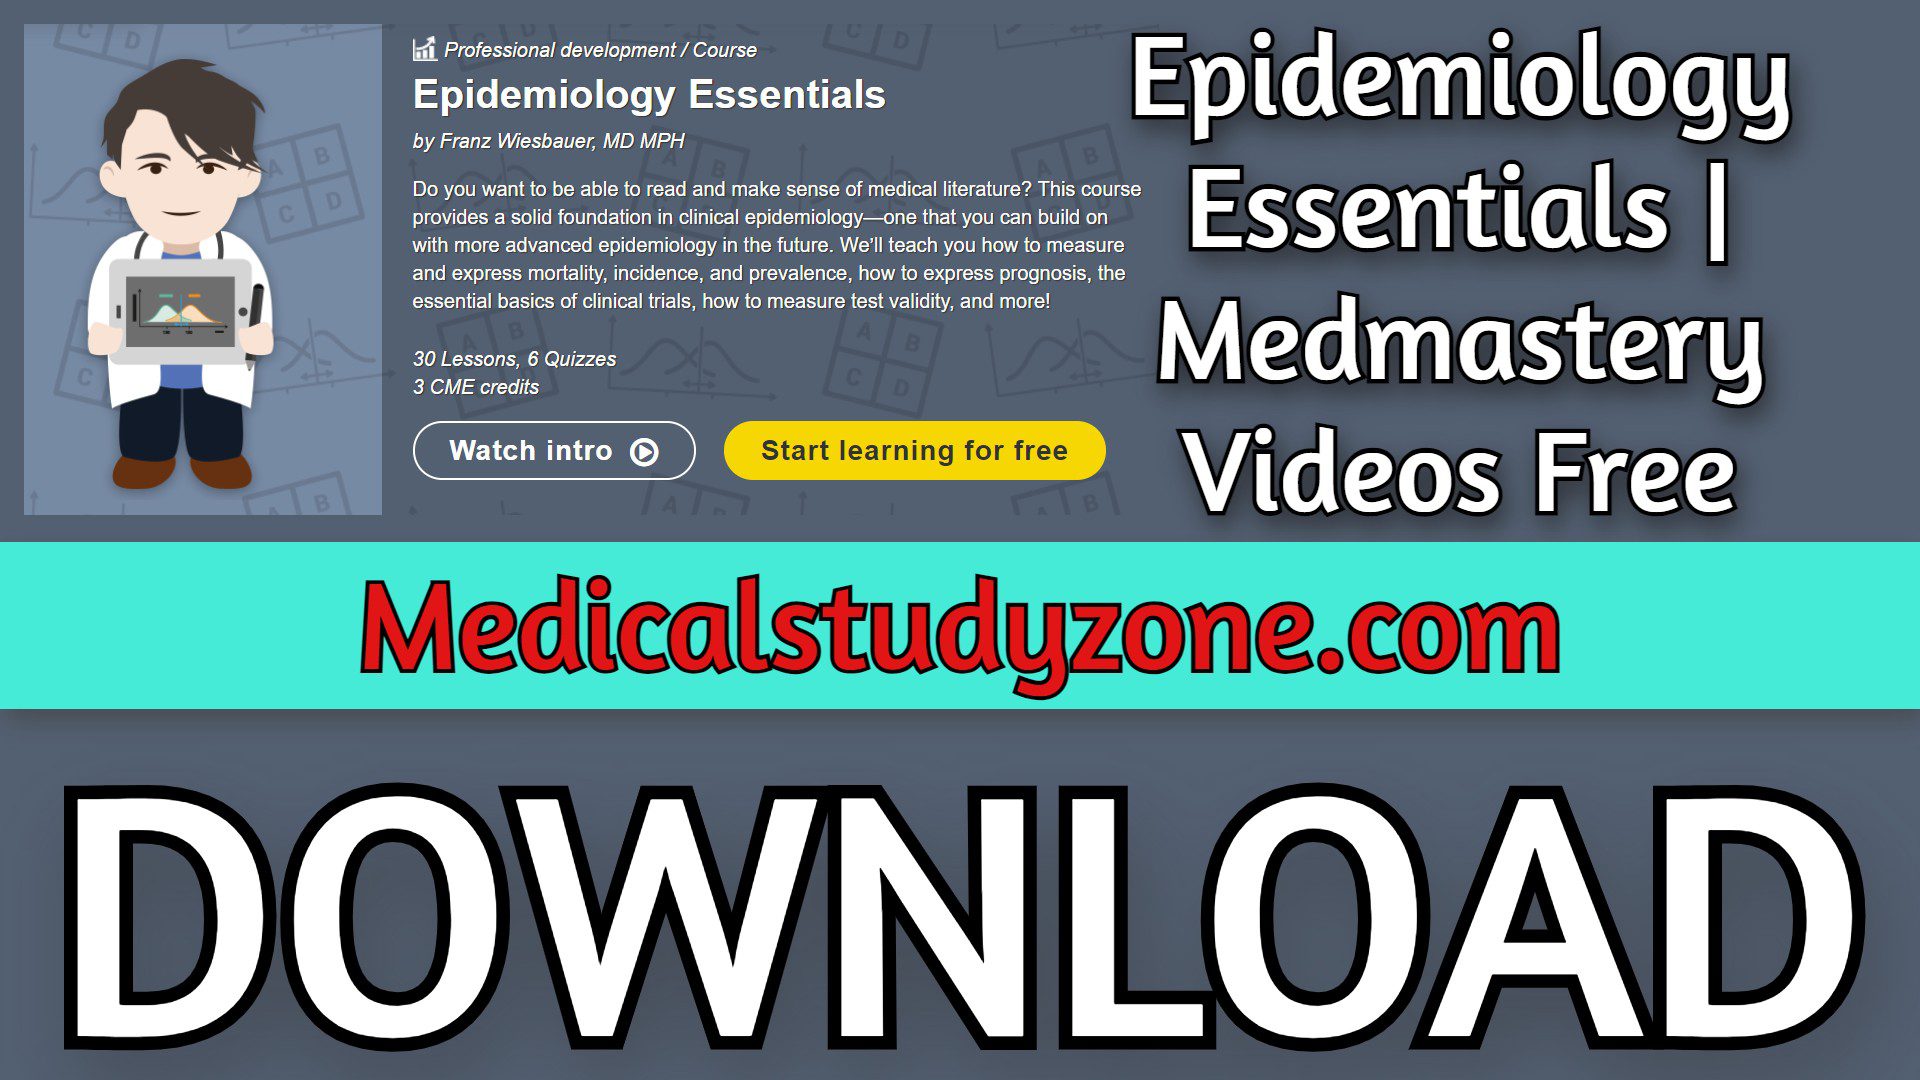 Epidemiology Essentials | Medmastery 2023 Videos Free Download